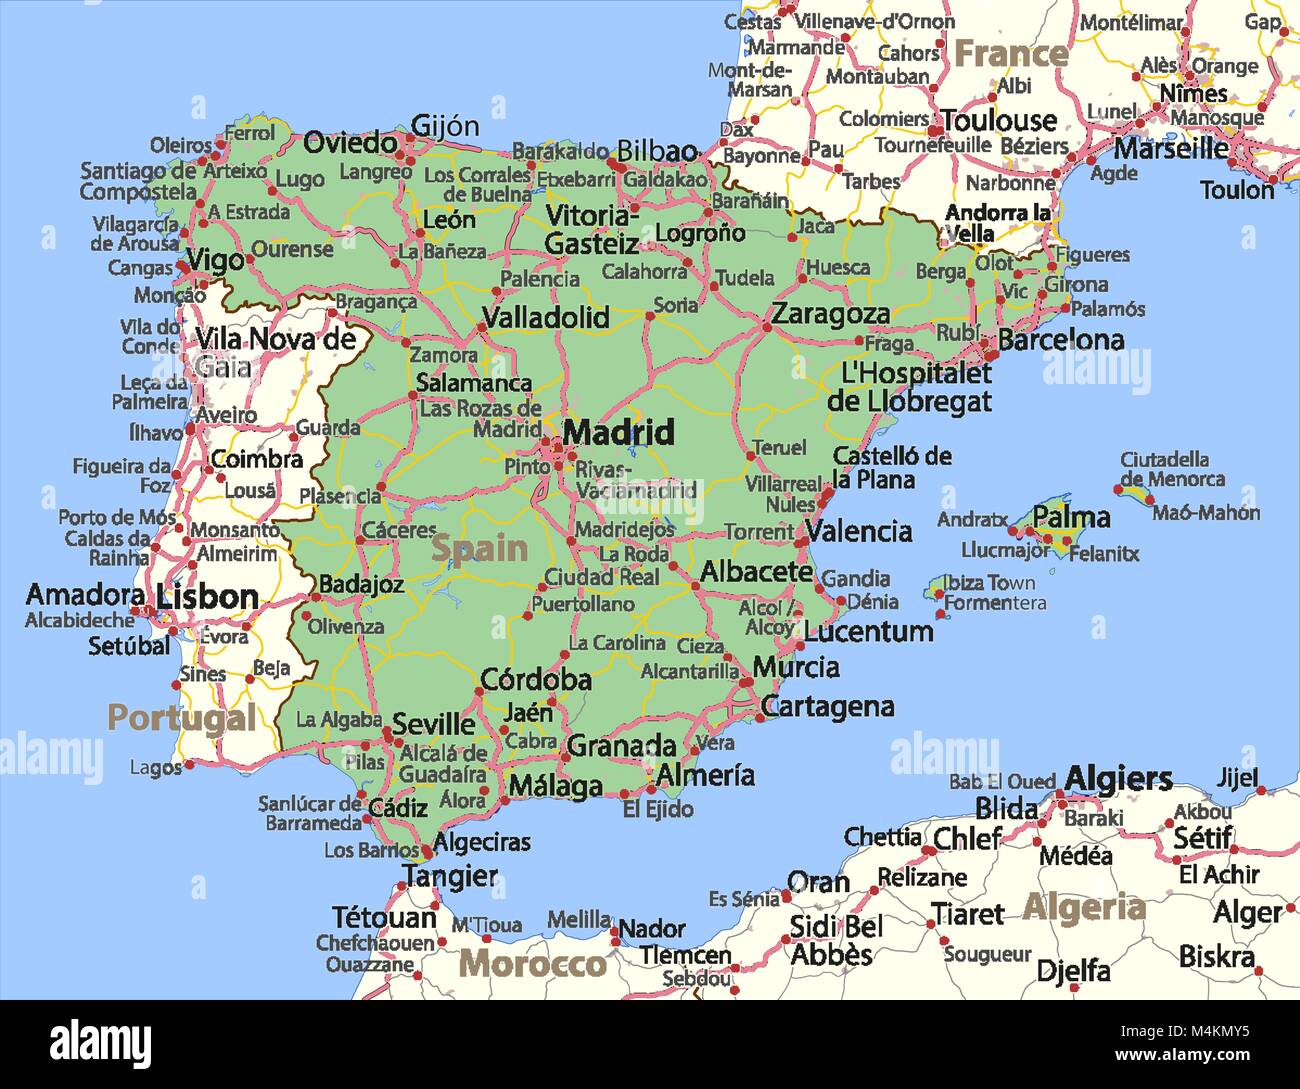 sygdom Menneskelige race vest Carte de l'Espagne. Montre frontières du pays, les zones urbaines, les noms  de lieux et de routes. Les étiquettes en anglais si possible. Projection :  Spherical Mercator Image Vectorielle Stock - Alamy